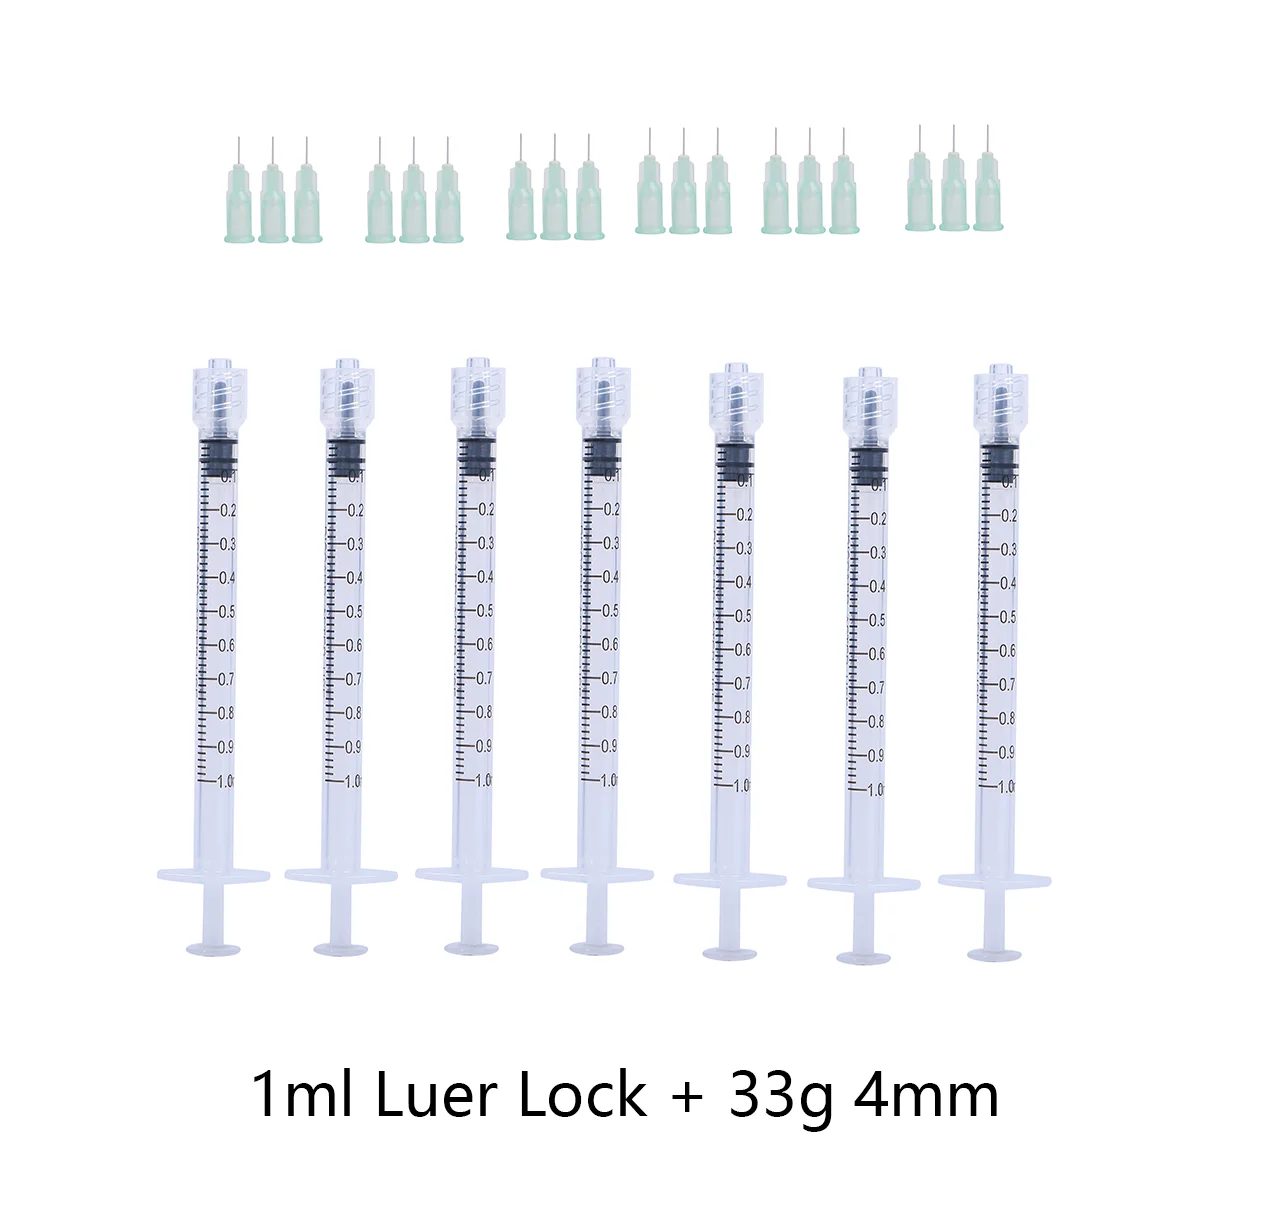 

Шприц и игла для инъекций Luer Lock, одноразовые стерильные индивидуально упакованные шприцы, 1 мл, 33 г, 4 мм, 33 г, 13 мм